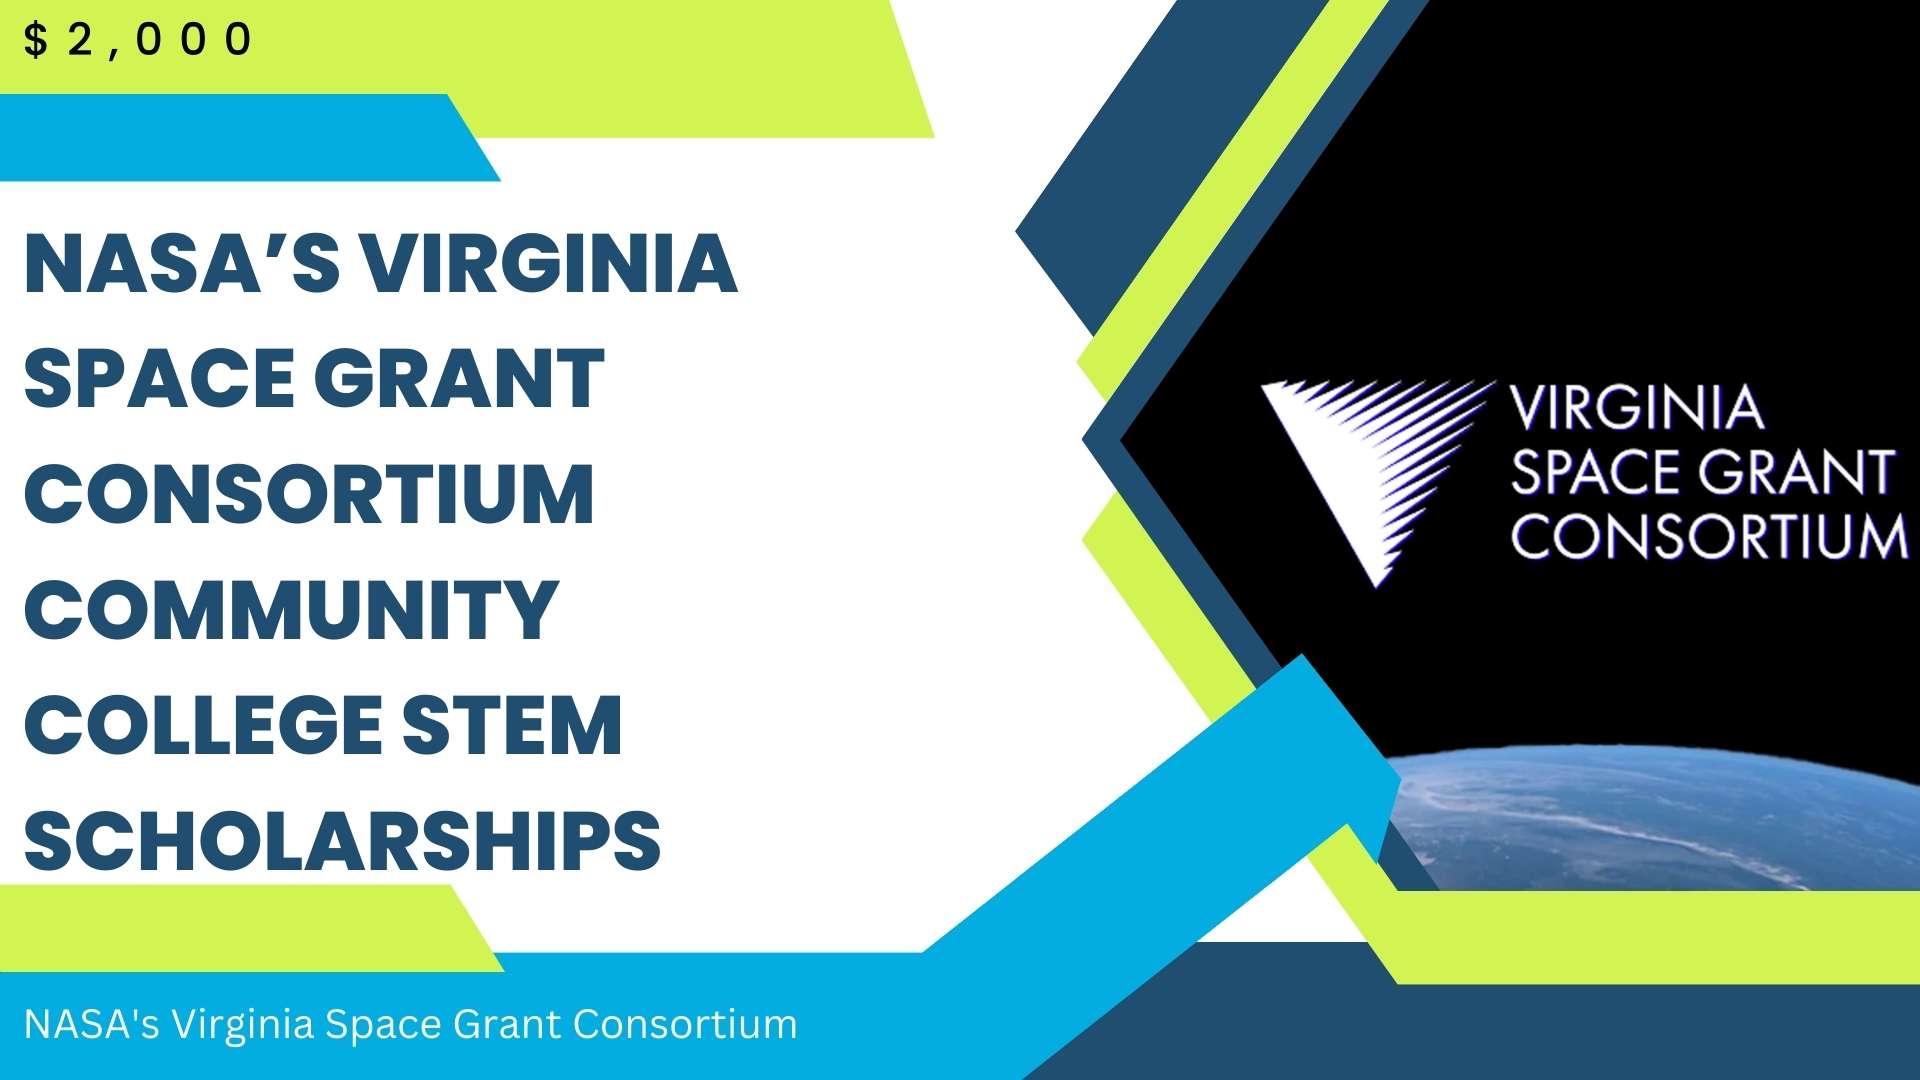 NASA's Virginia Space Grant Consortium Community College STEM Scholarships